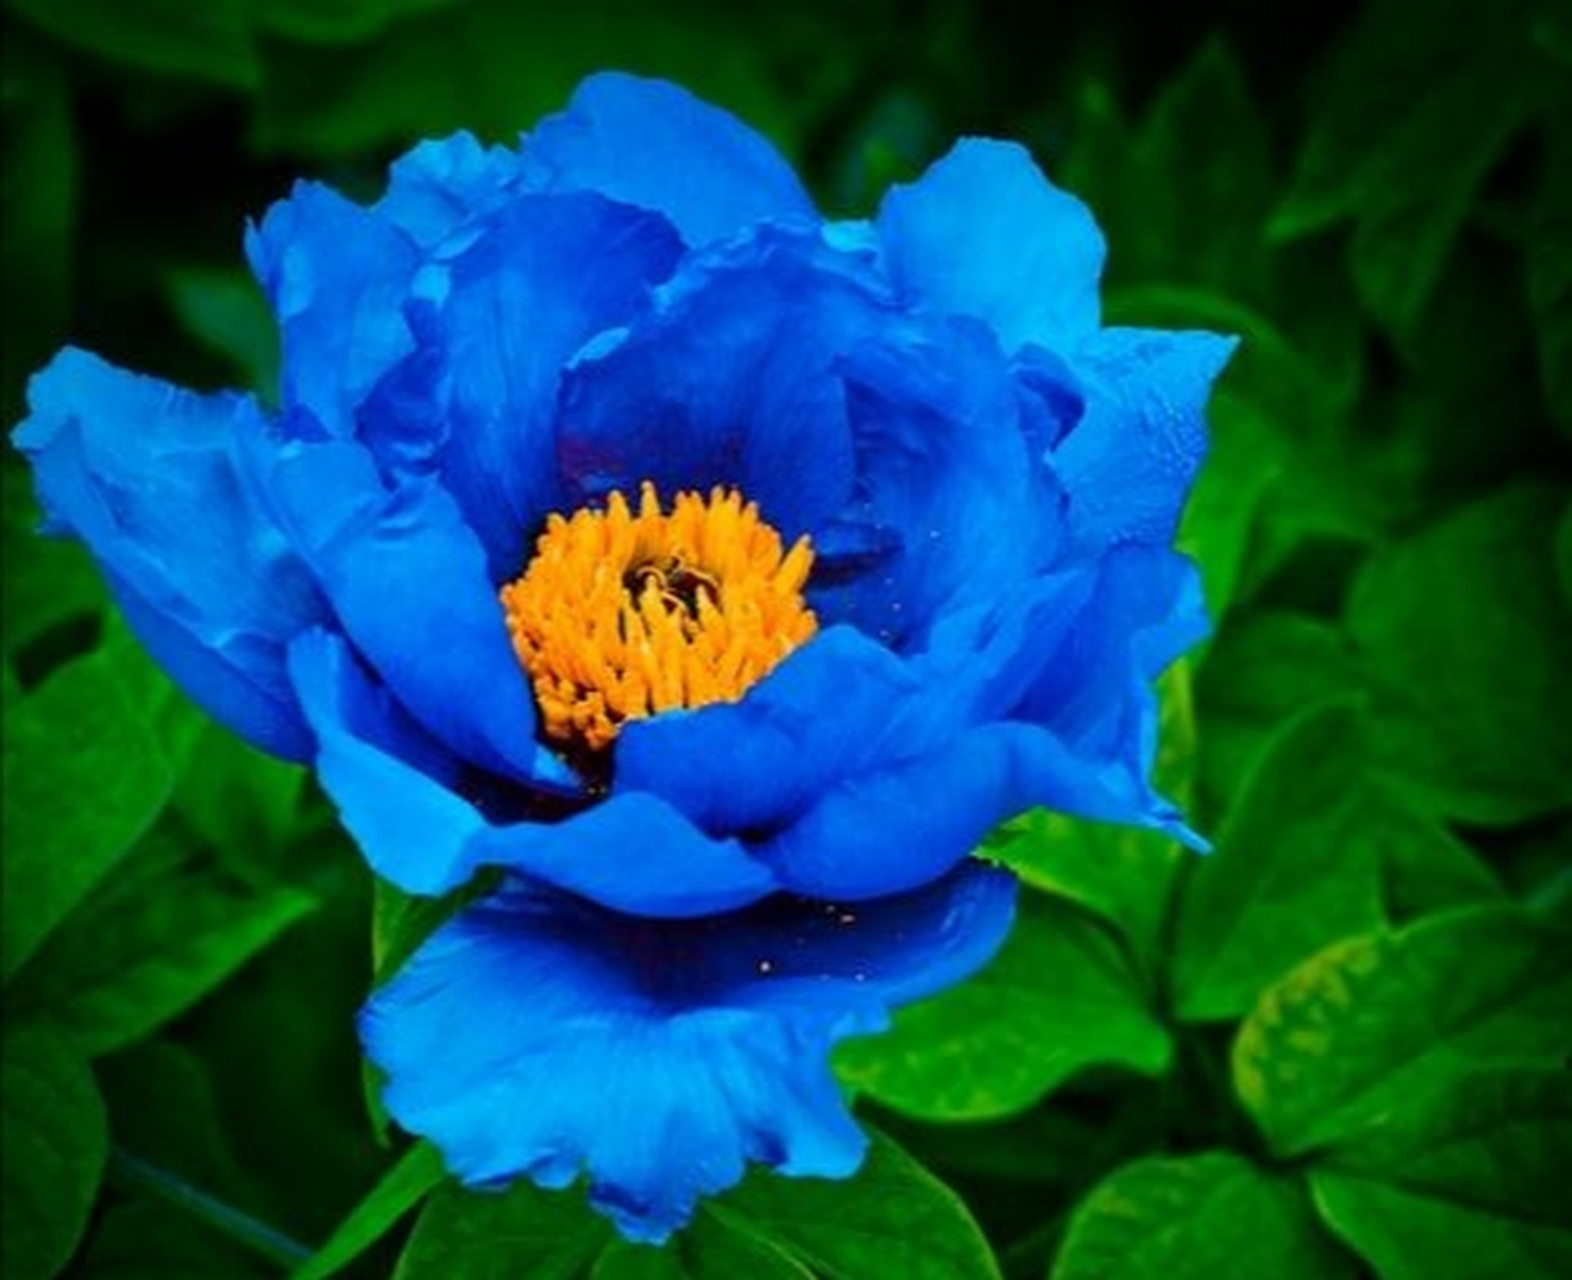 绝美冷艳的蓝牡丹开出一片蓝色的海洋 牡丹花的赞歌——《牡丹之歌》